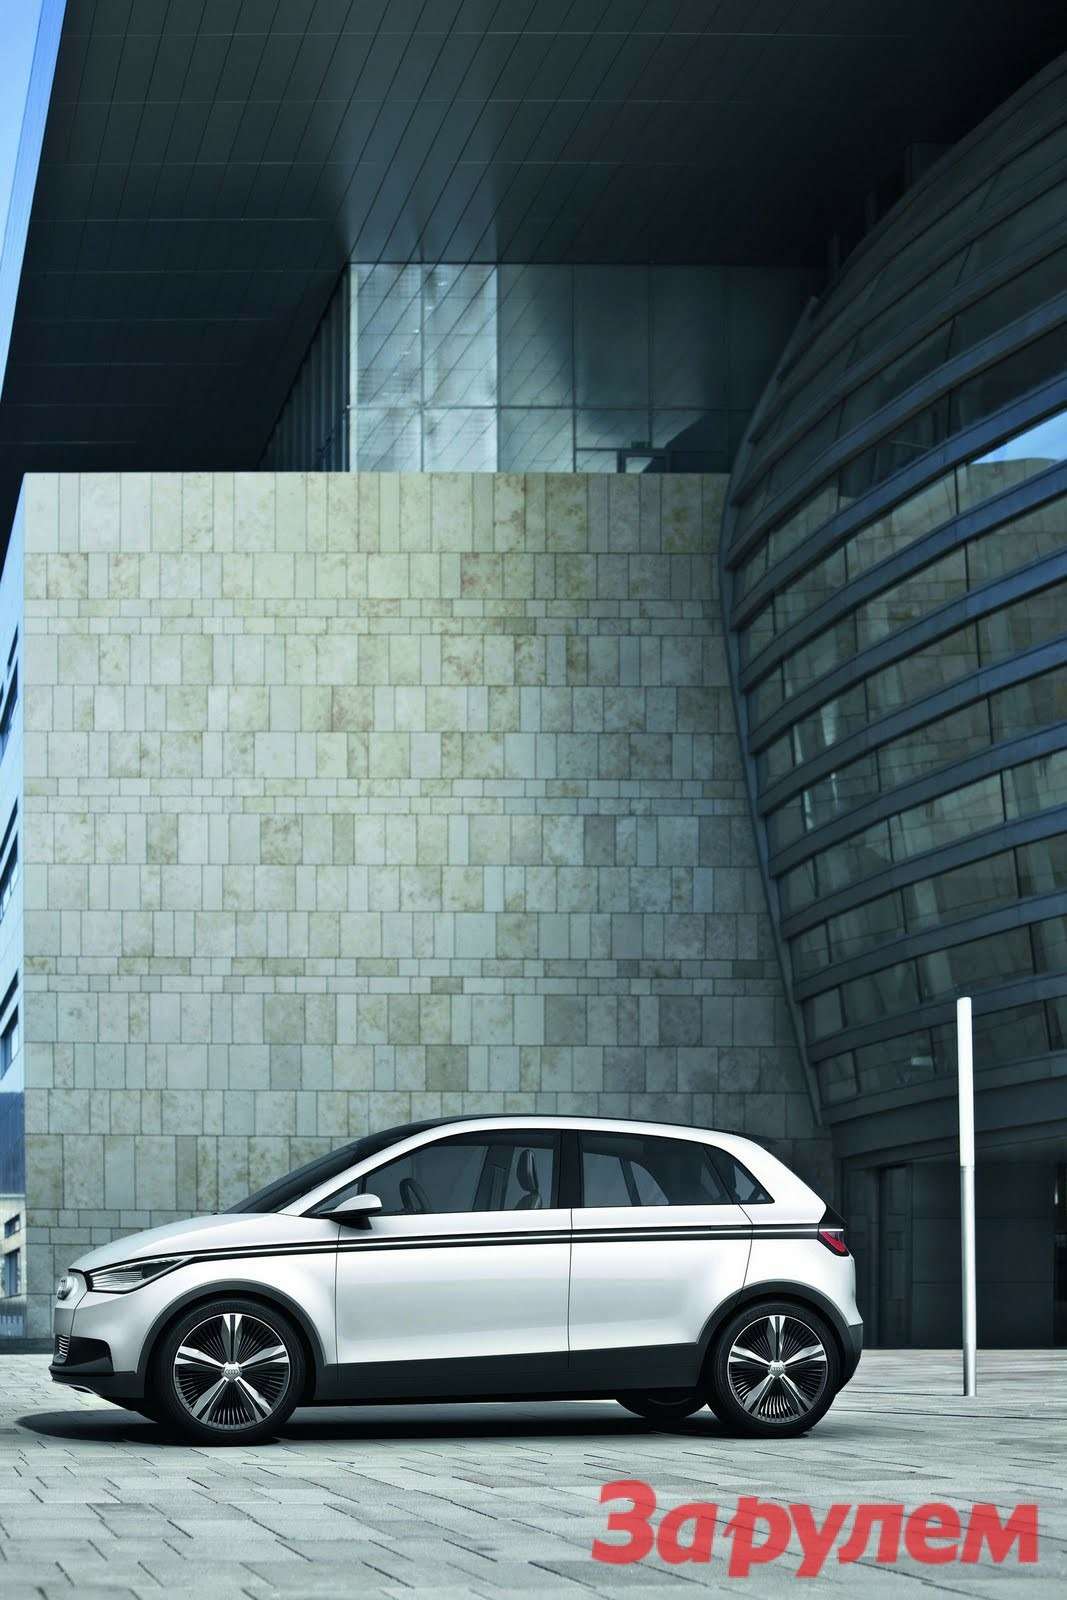 Audi_A2-Concept-1